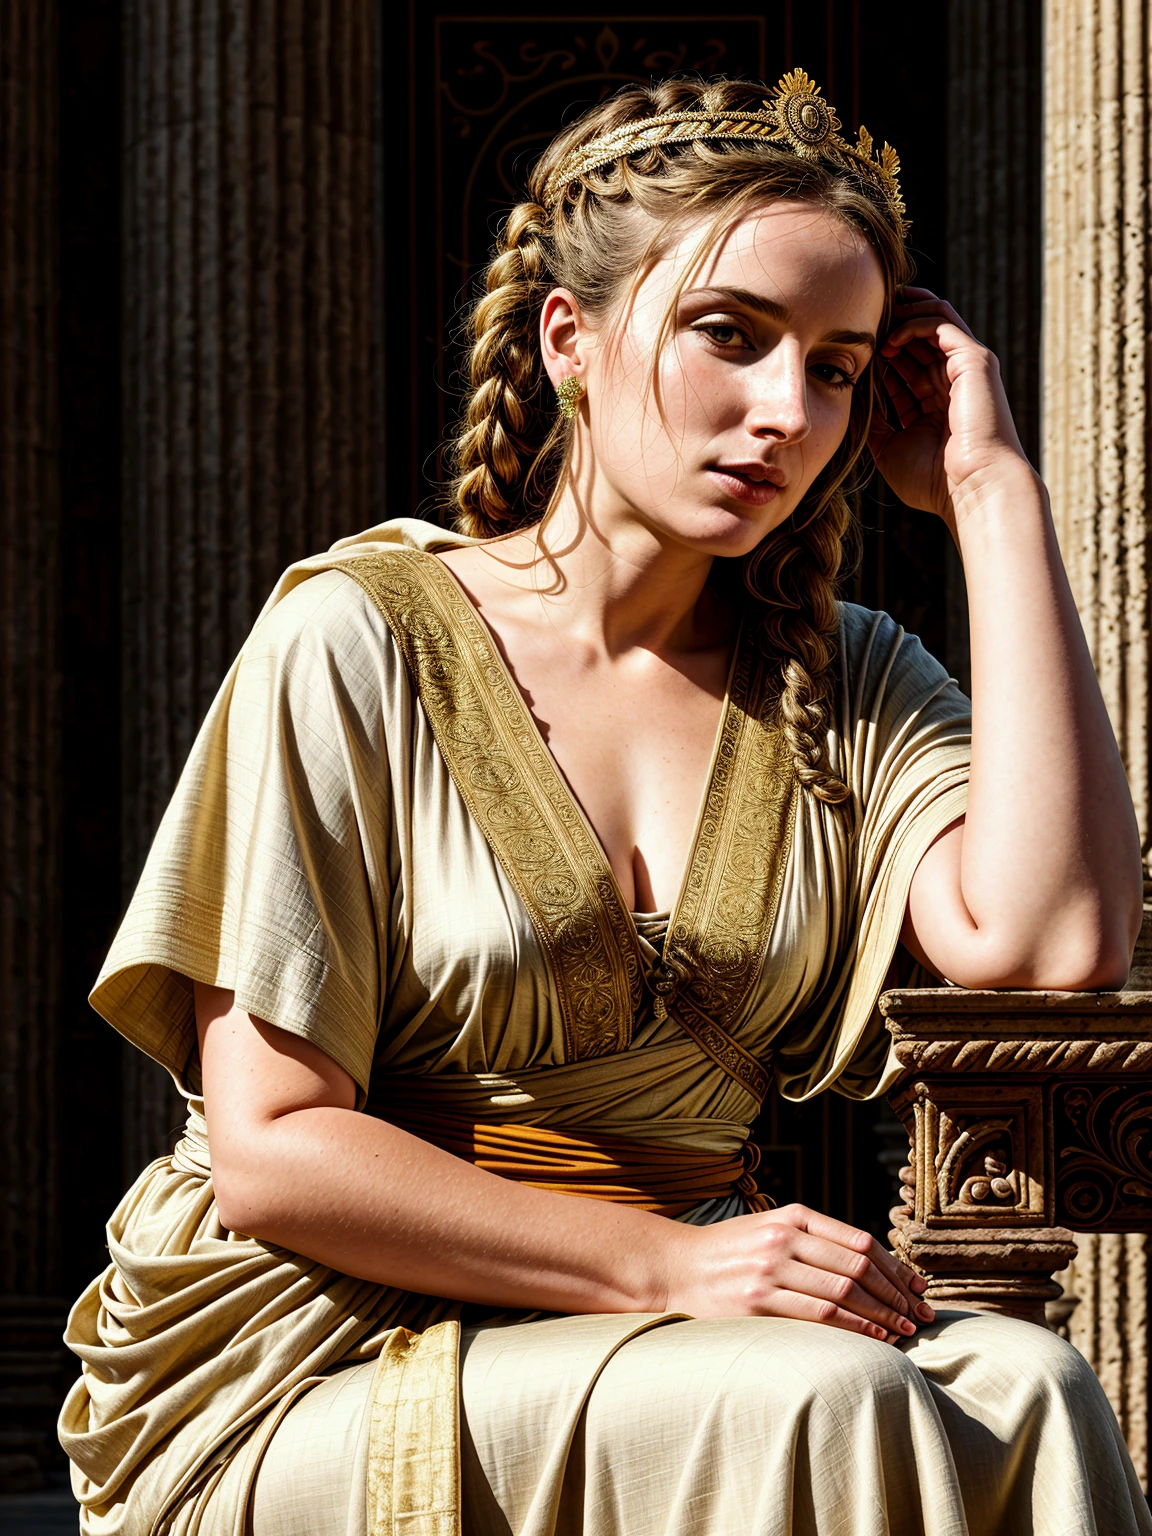 逼真的, 最好的品質, 原始照片, 電影構圖, 古羅馬帝國一位美麗女子坐著的側視中景, (頭低下, 向下看:1.4), (淡淡一笑, 沉思的樣子), (穿著 (長款寬鬆布料:1.2) 古典風格的束腰外衣, 豐富的古風身體配件, 神話般的王冠), 肌理, [皮膚皺紋, 皮膚斑點], 衣服上的皺紋, 室內的, (古羅馬帝國髮型|衣服|家具|背景), (非常詳細 背景:1.4), (豐富的細節, 錯綜複雜的細節:1.2), 非常詳細 衣服, 體積照明, 銳利的焦點, 8K, 非常詳細, 超高畫質, 高動態範圍,  亚洲人较少, 